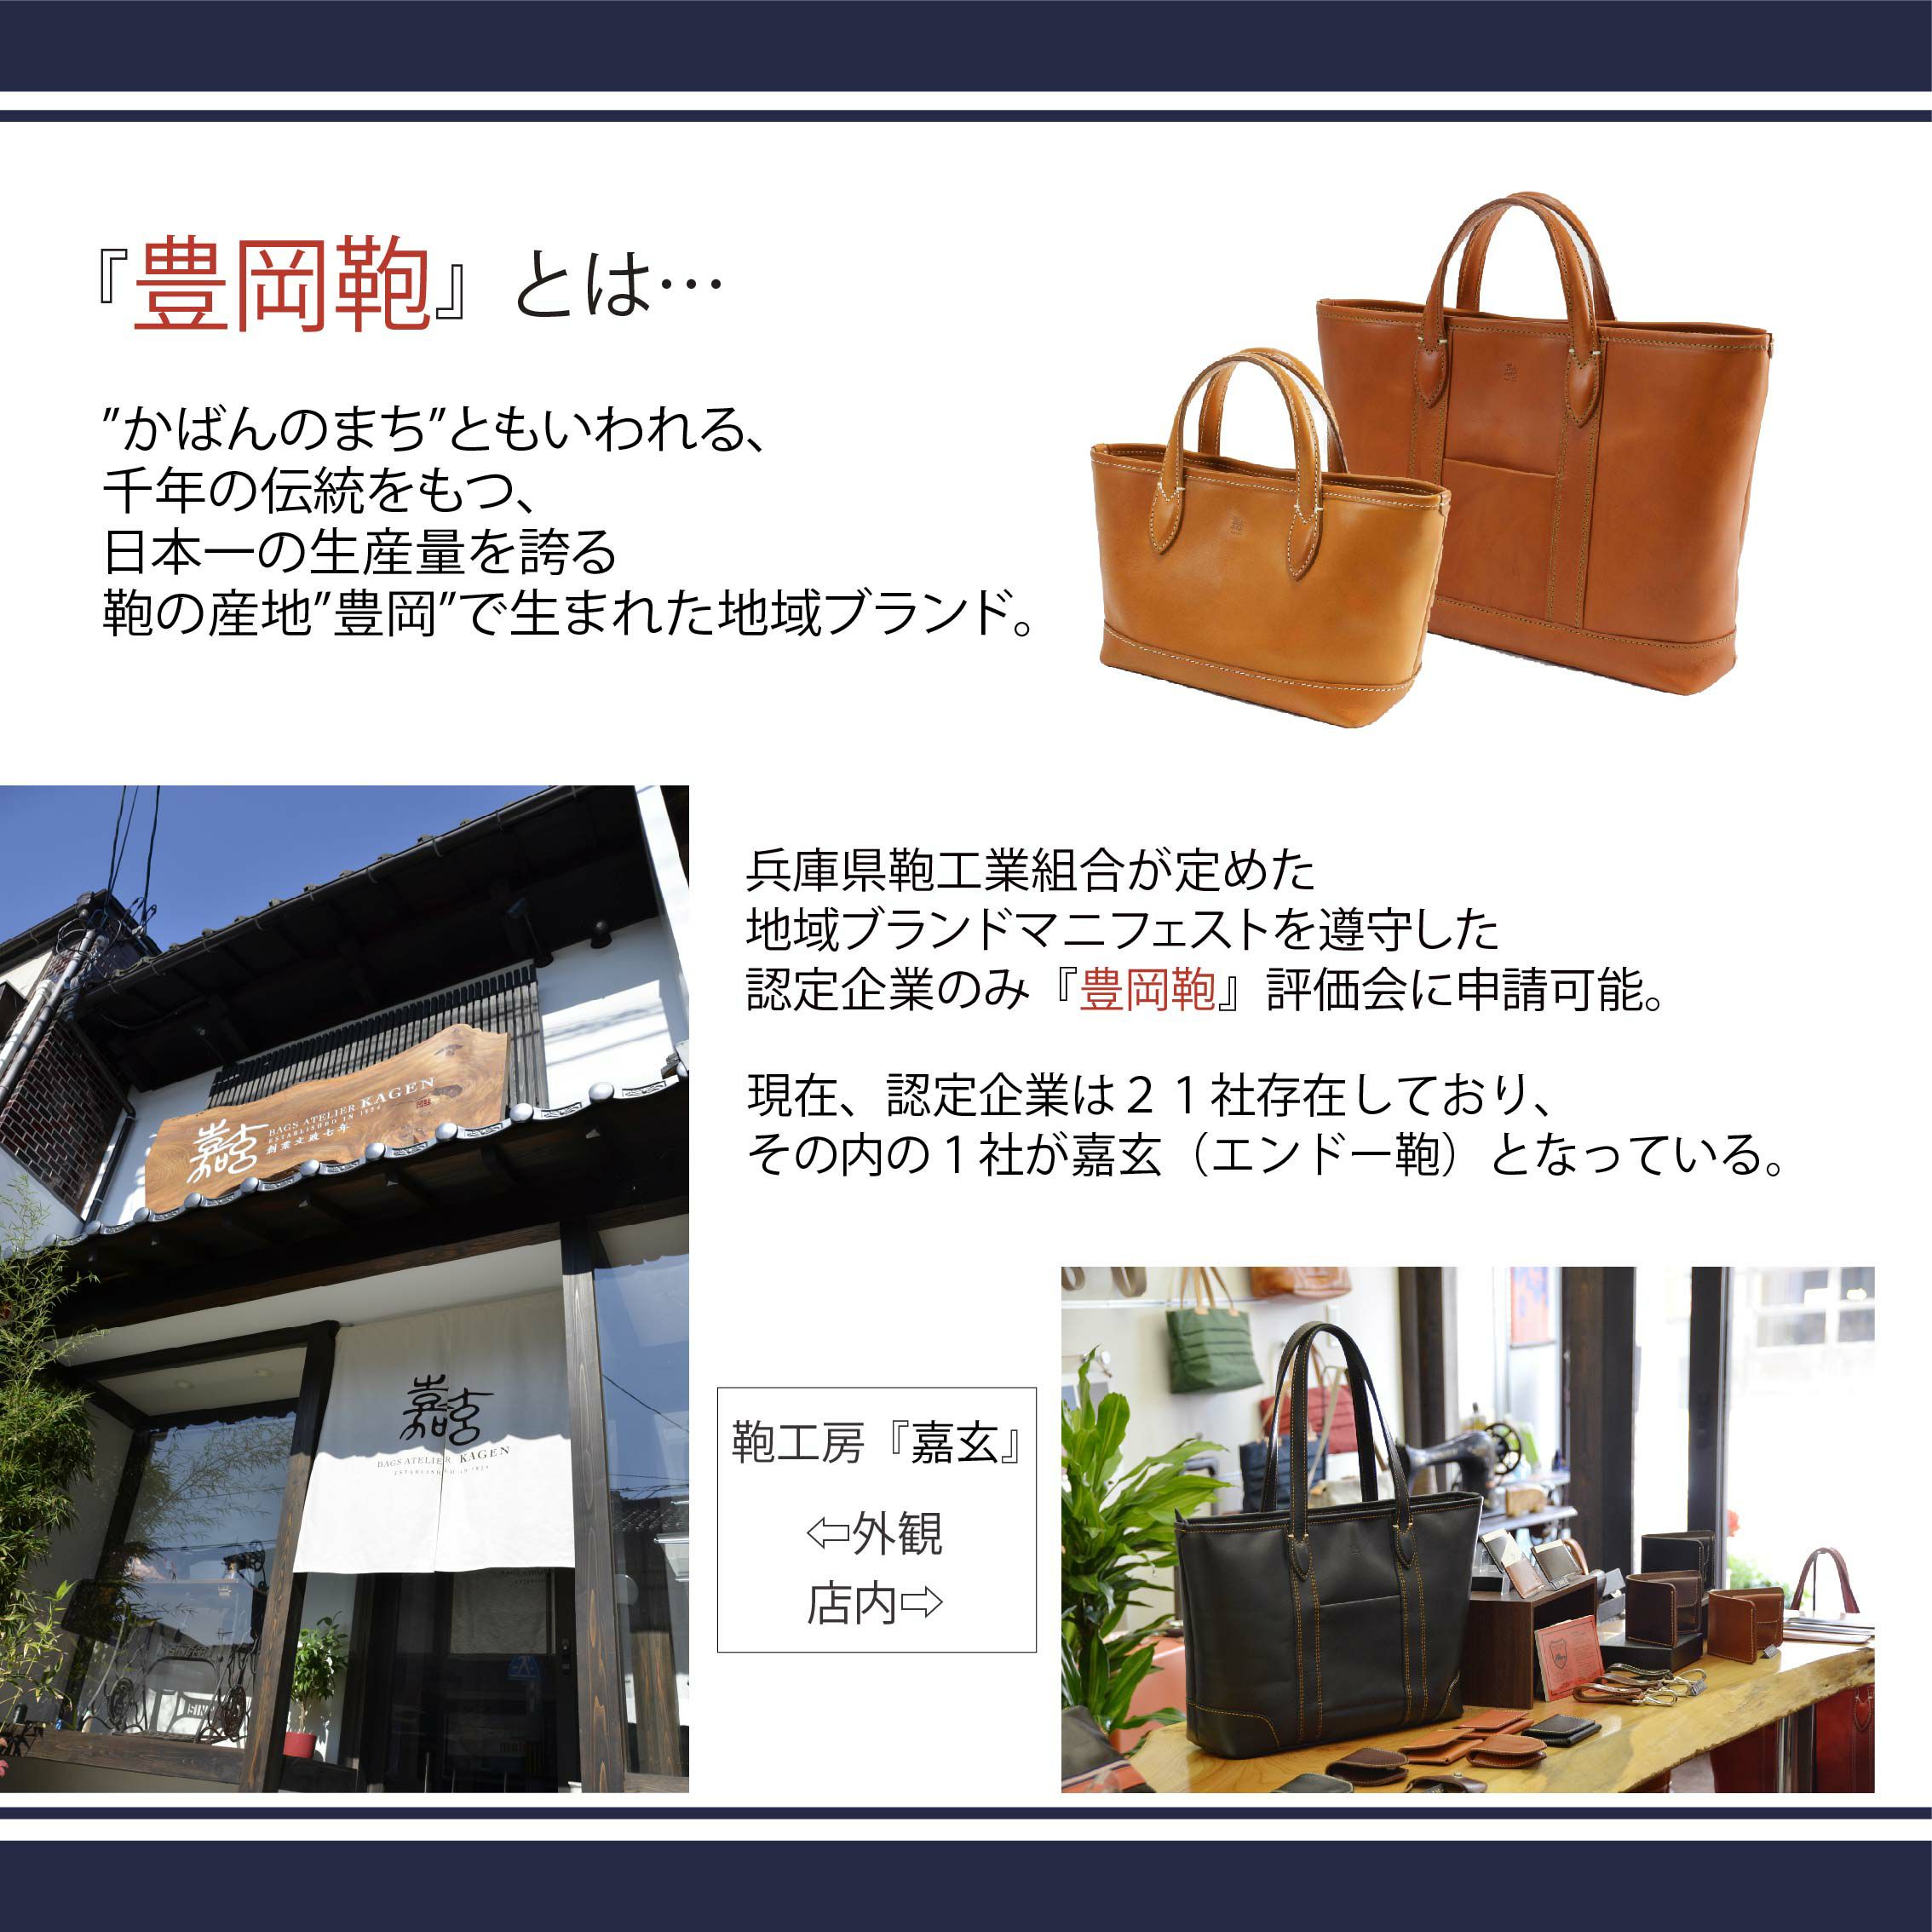 「豊岡鞄」とは、鞄の町ともいわれる千年の伝統を持つ日本一の生産量を誇る鞄の産地「豊岡」で生まれた地域ブランド。兵庫県鞄工業組合が定めた地域ブランドマニフェストを尊寿した認定企業のみ「豊岡鞄」評価会に申請可能。現在、認定企業は21社存在しており、その内の1社が嘉玄（エンドー鞄）となっている。 華 HANA 横型トートキャリー 嘉玄 型番7-151　かげん　はな